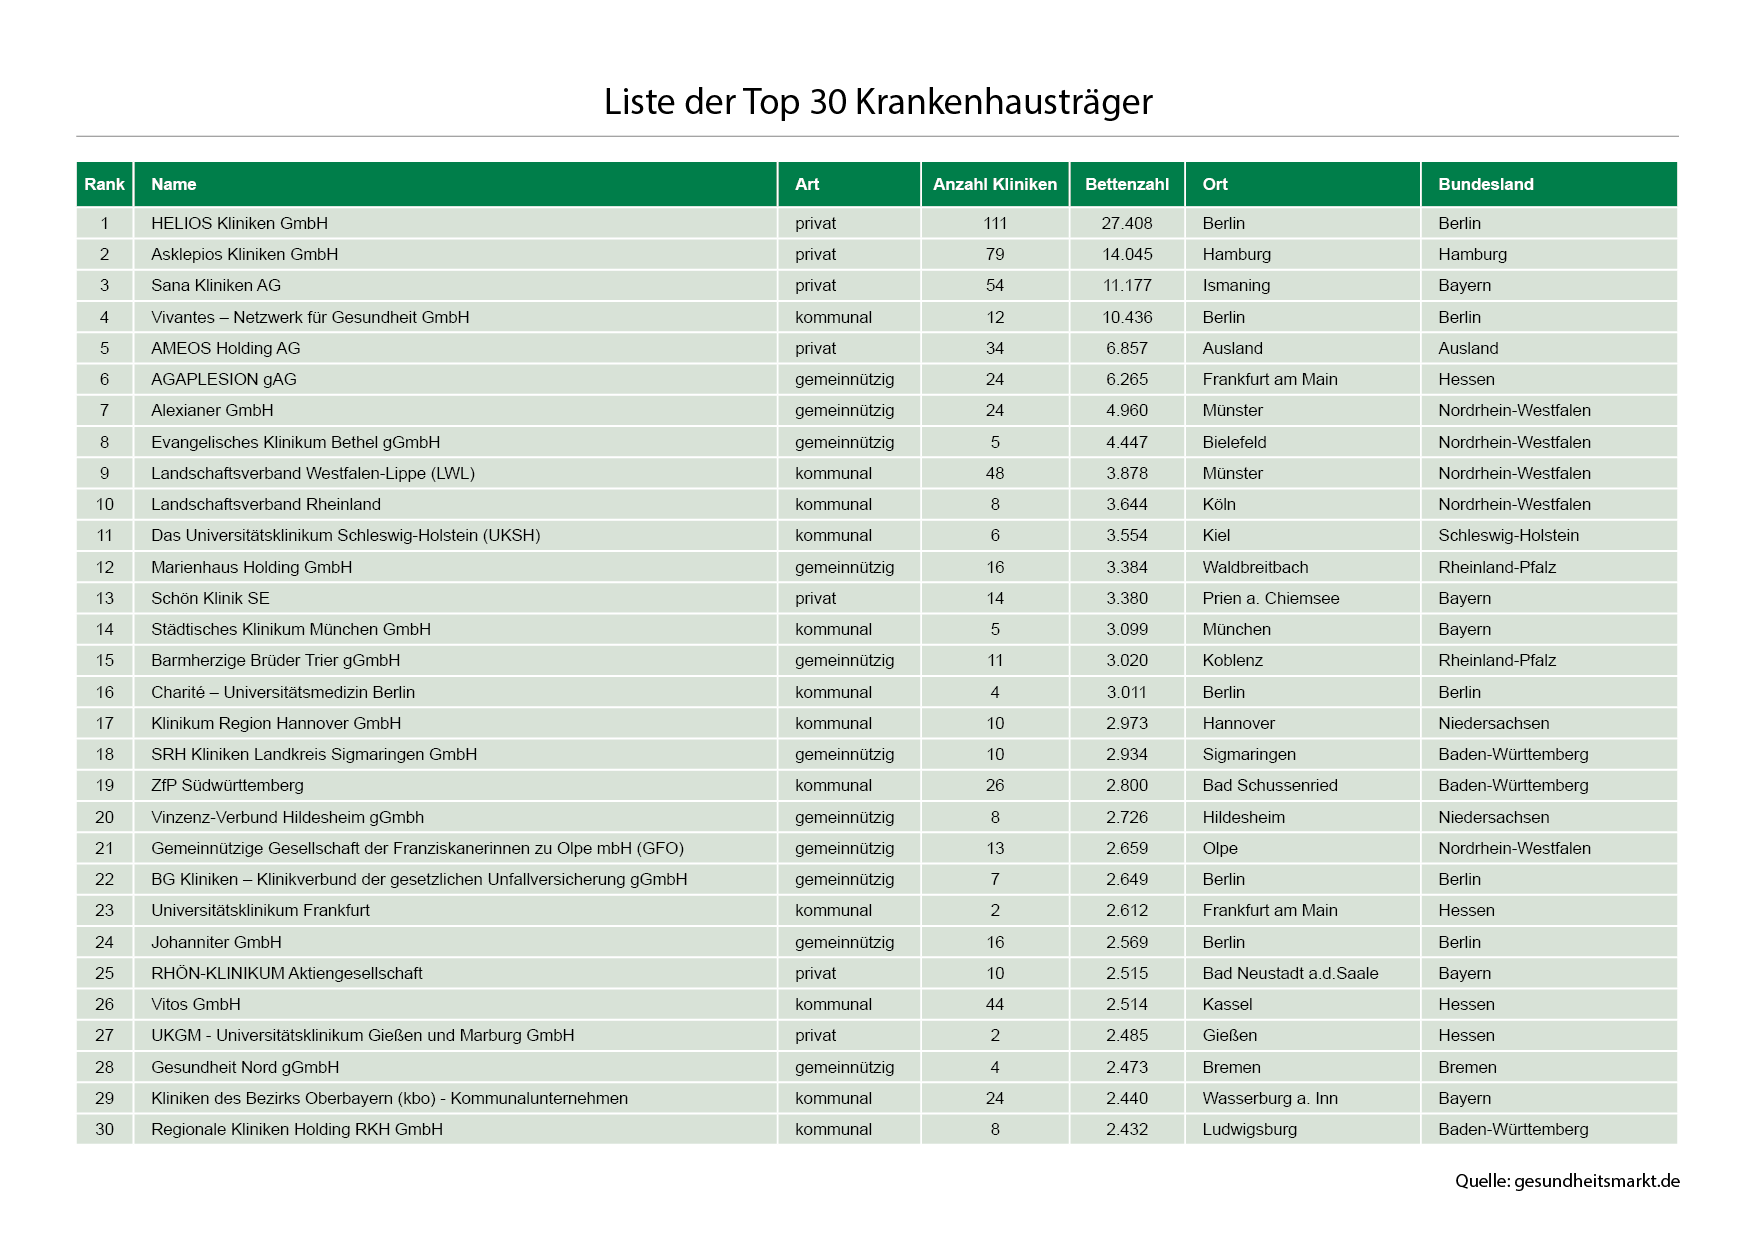 Liste der 30 größten Krankenhausträger